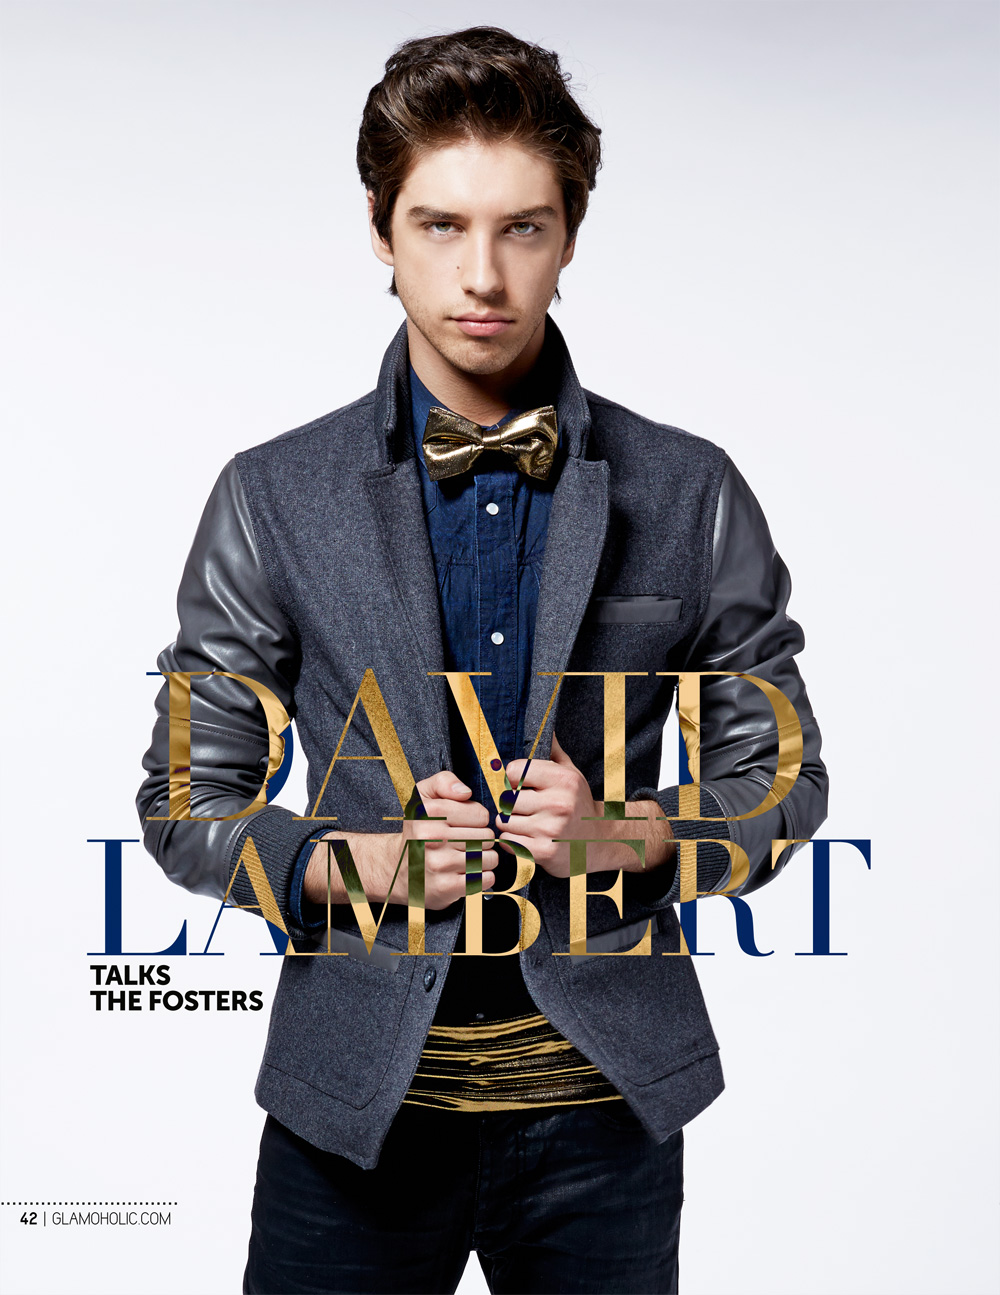 images-of-david-lambert-actor